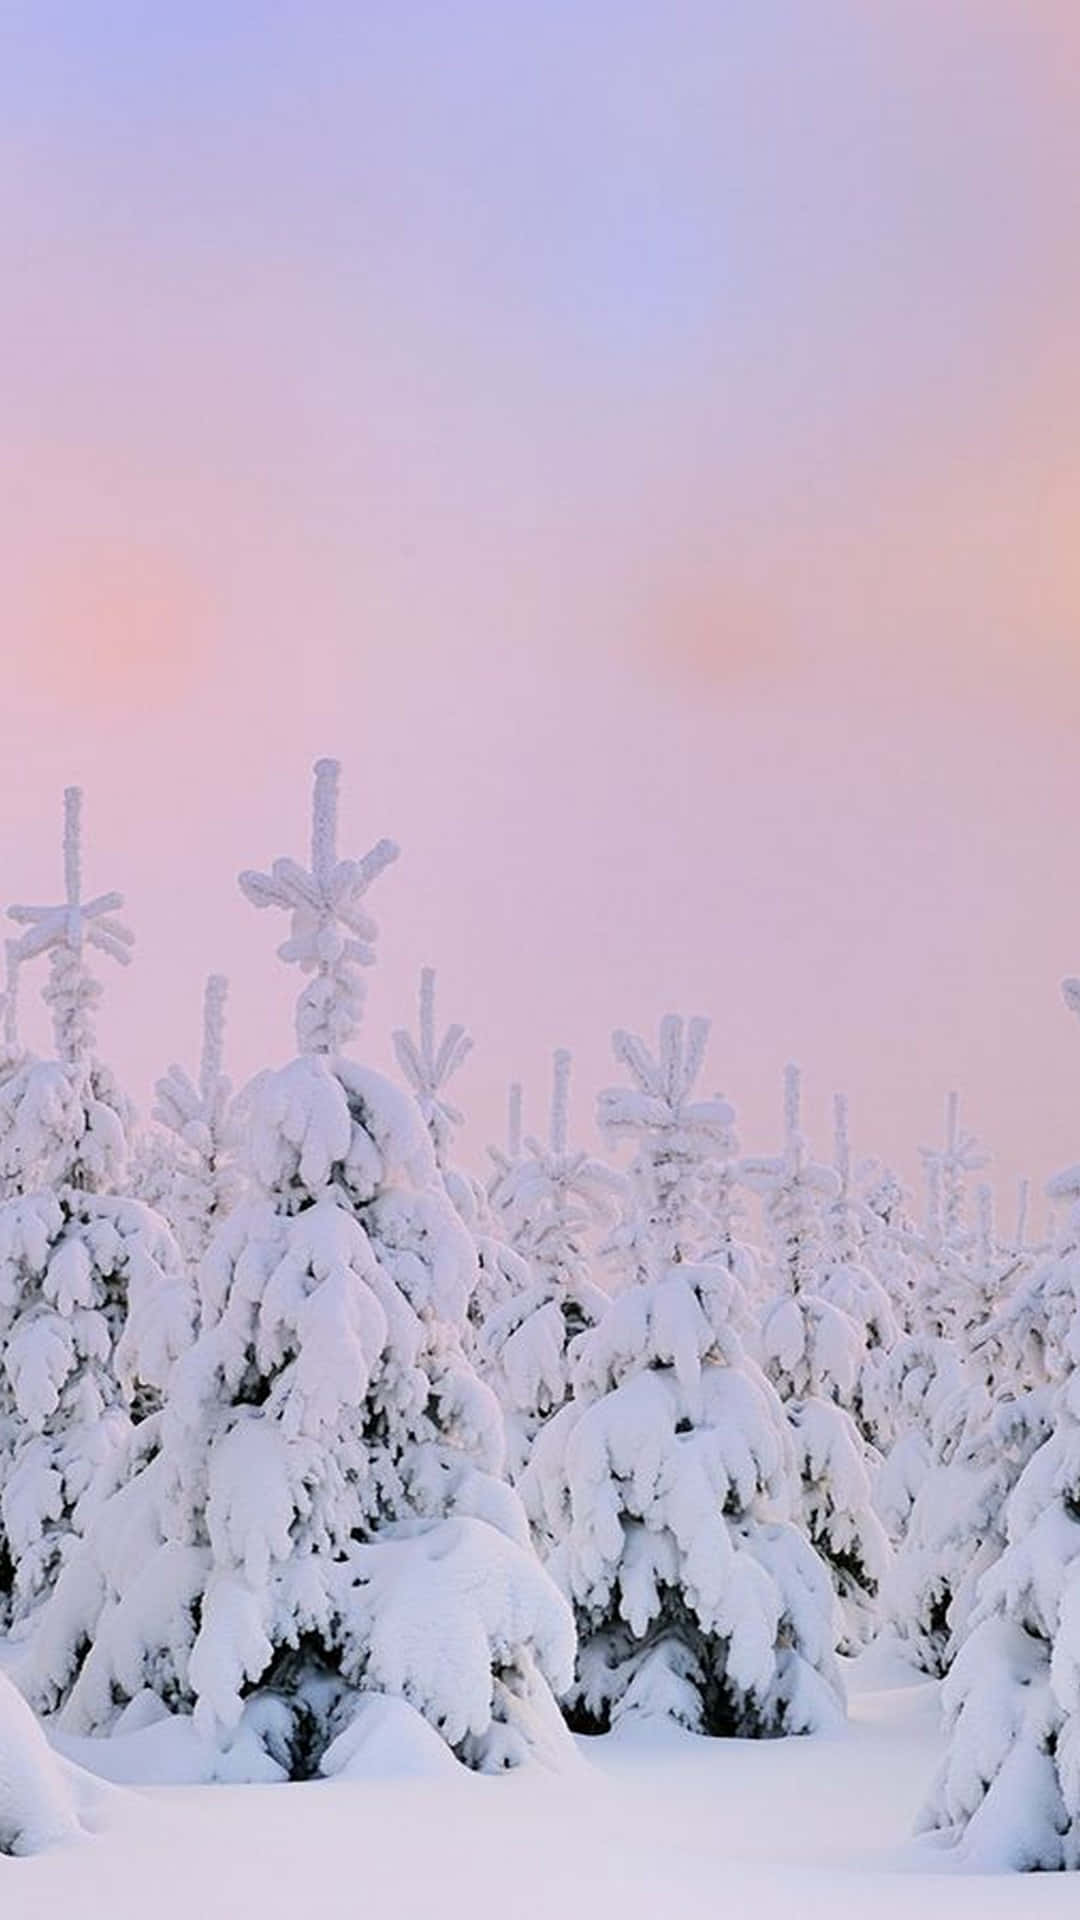  Winterlandschaft Hintergrundbild 1080x1920. Bilder Von Snow Aesthetic